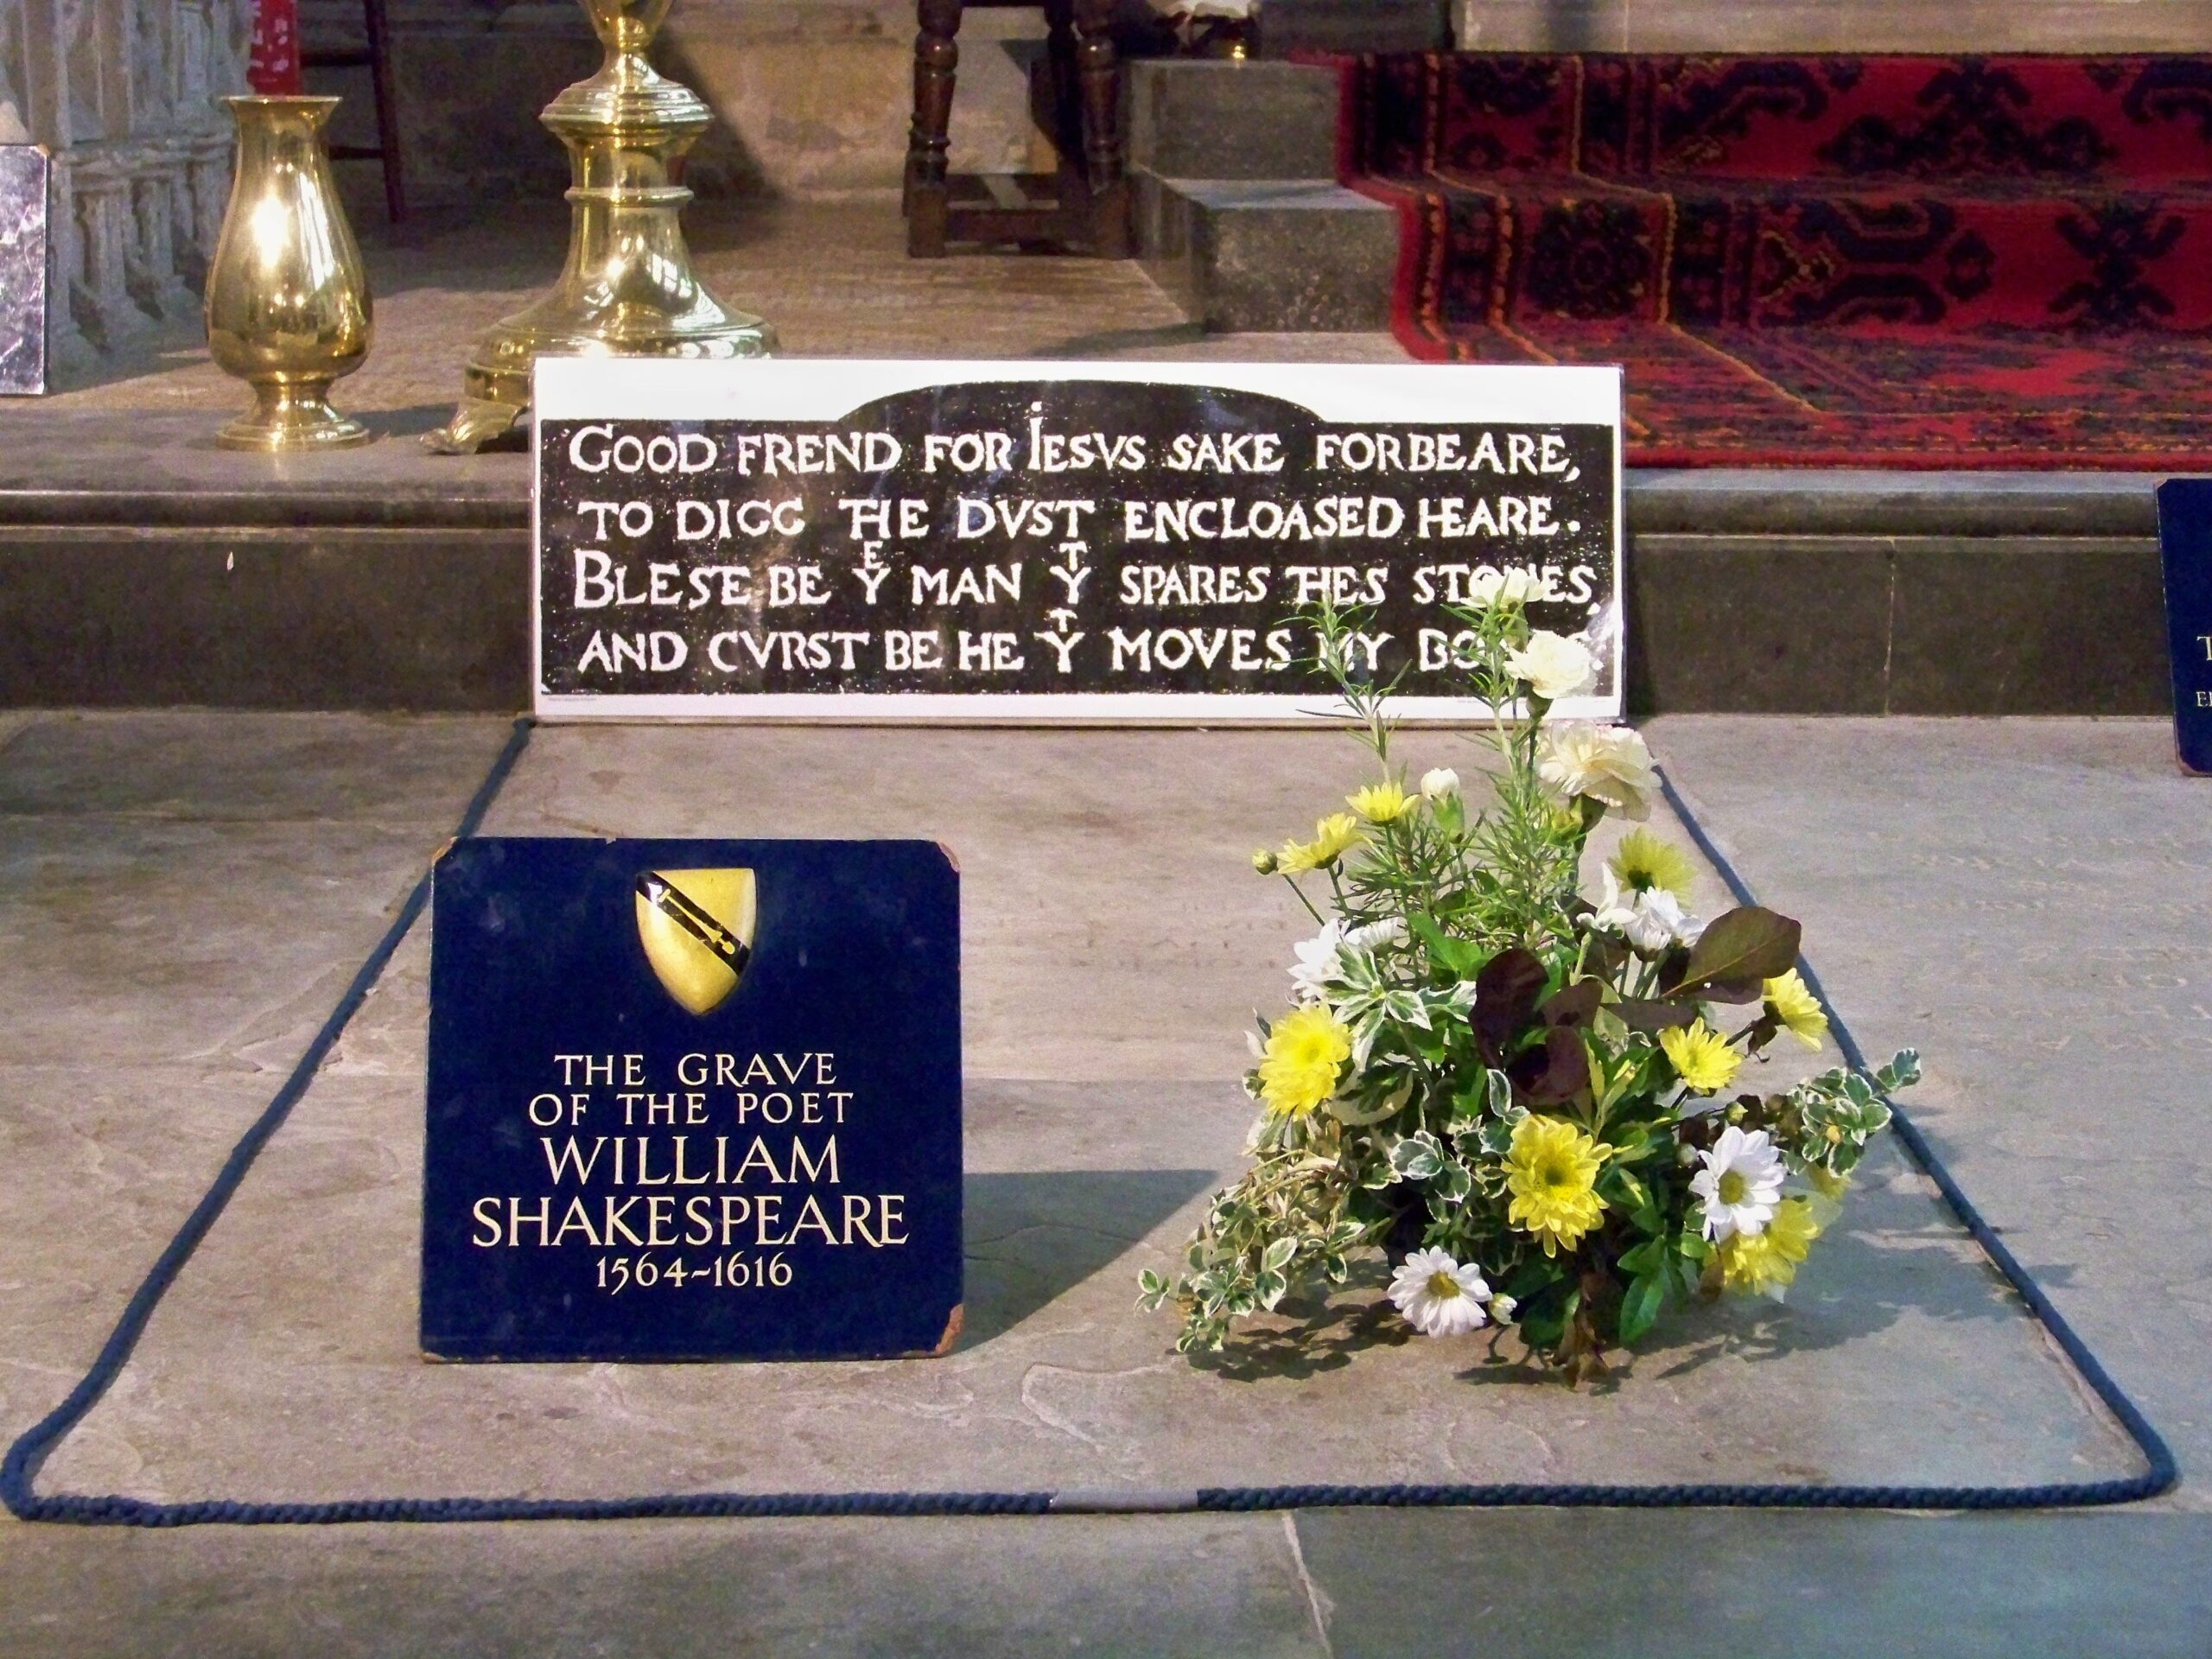 وفاة وليم شكسبير